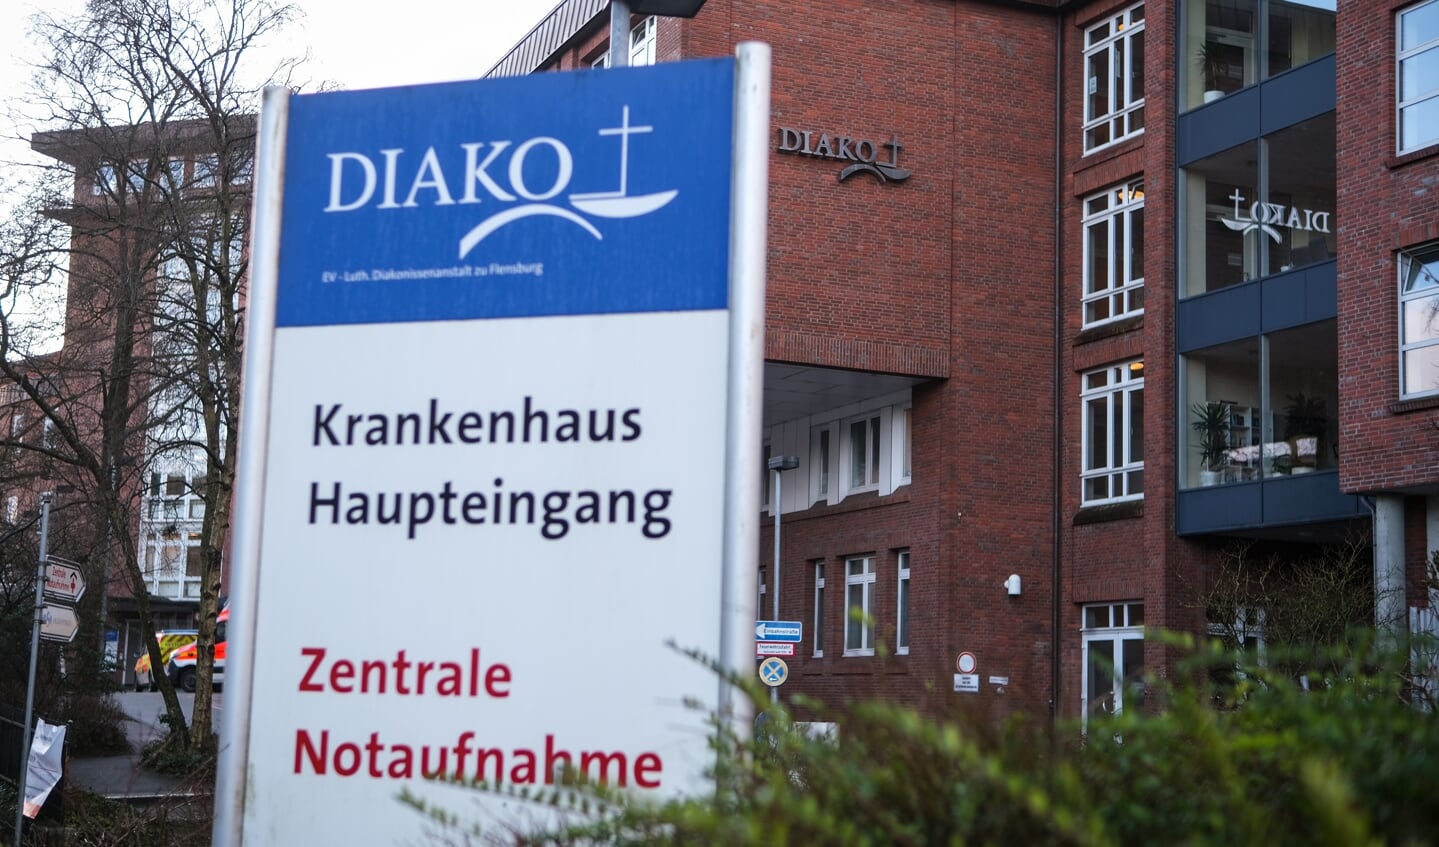 Diako-sygehuset har begæret om rekonstruktion på grund af store økonomiske problemer. Arkivfoto: